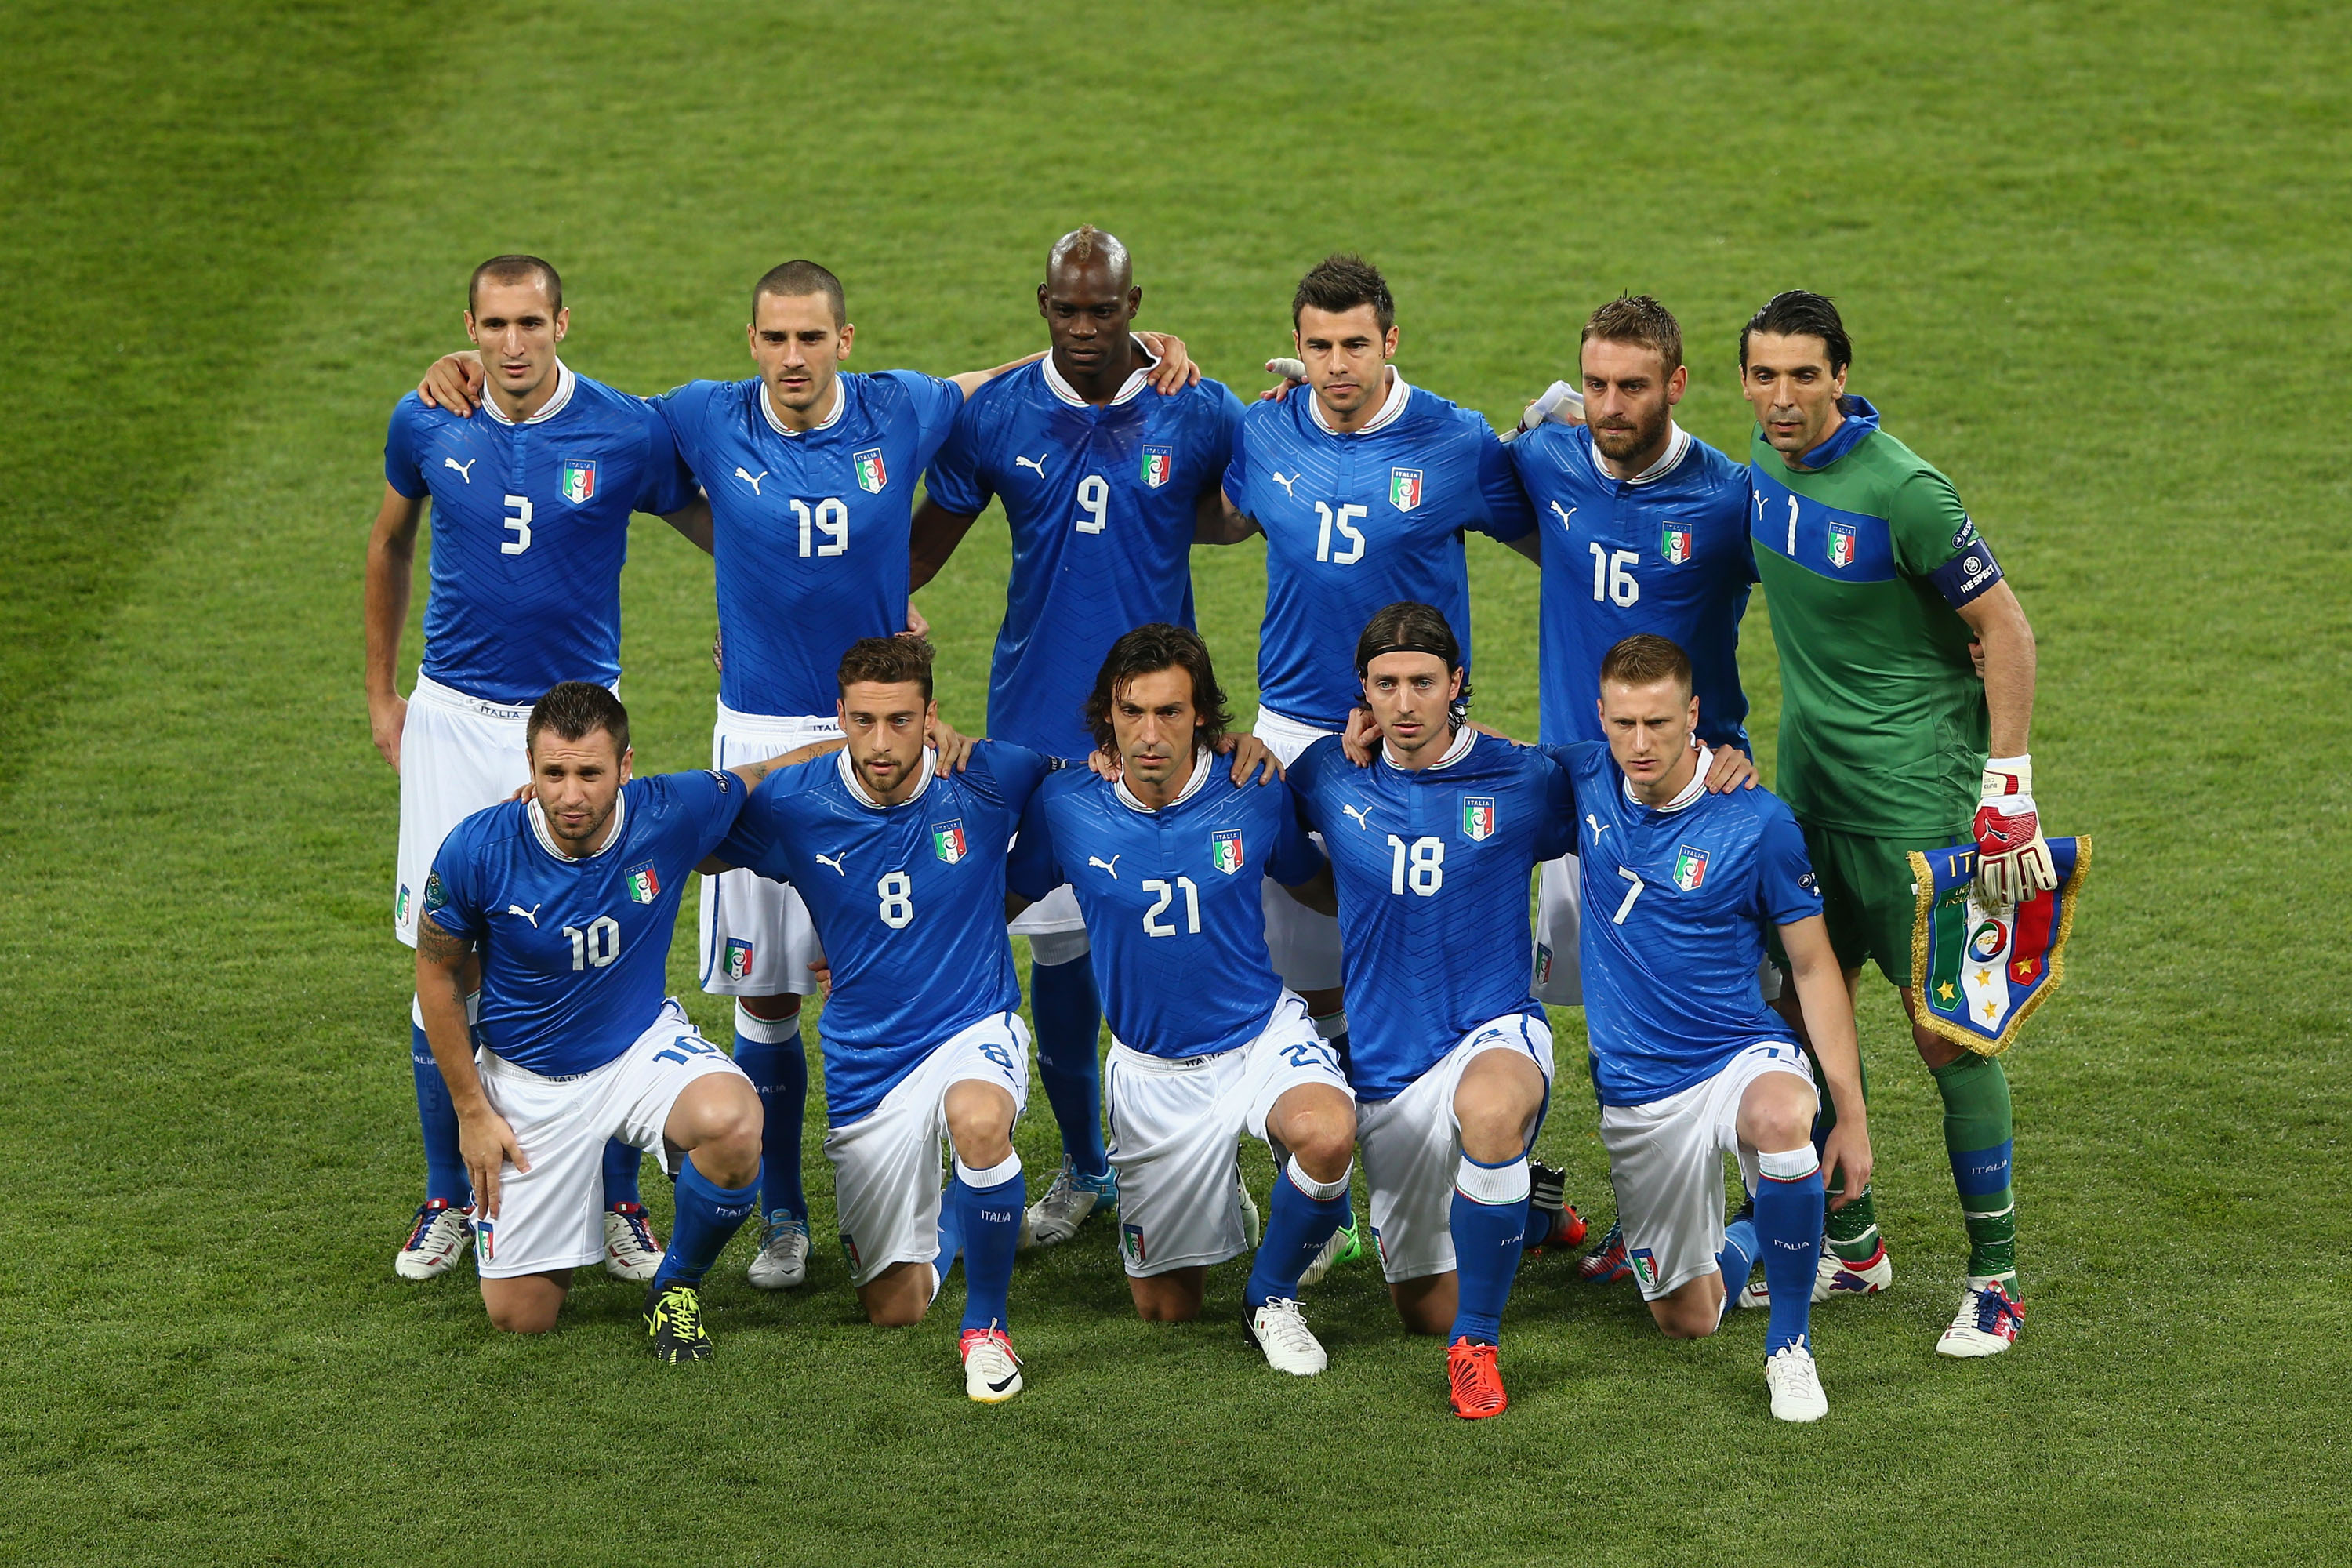  Calcio, Ranking FIFA: l’Italia sprofonda al 14° posto